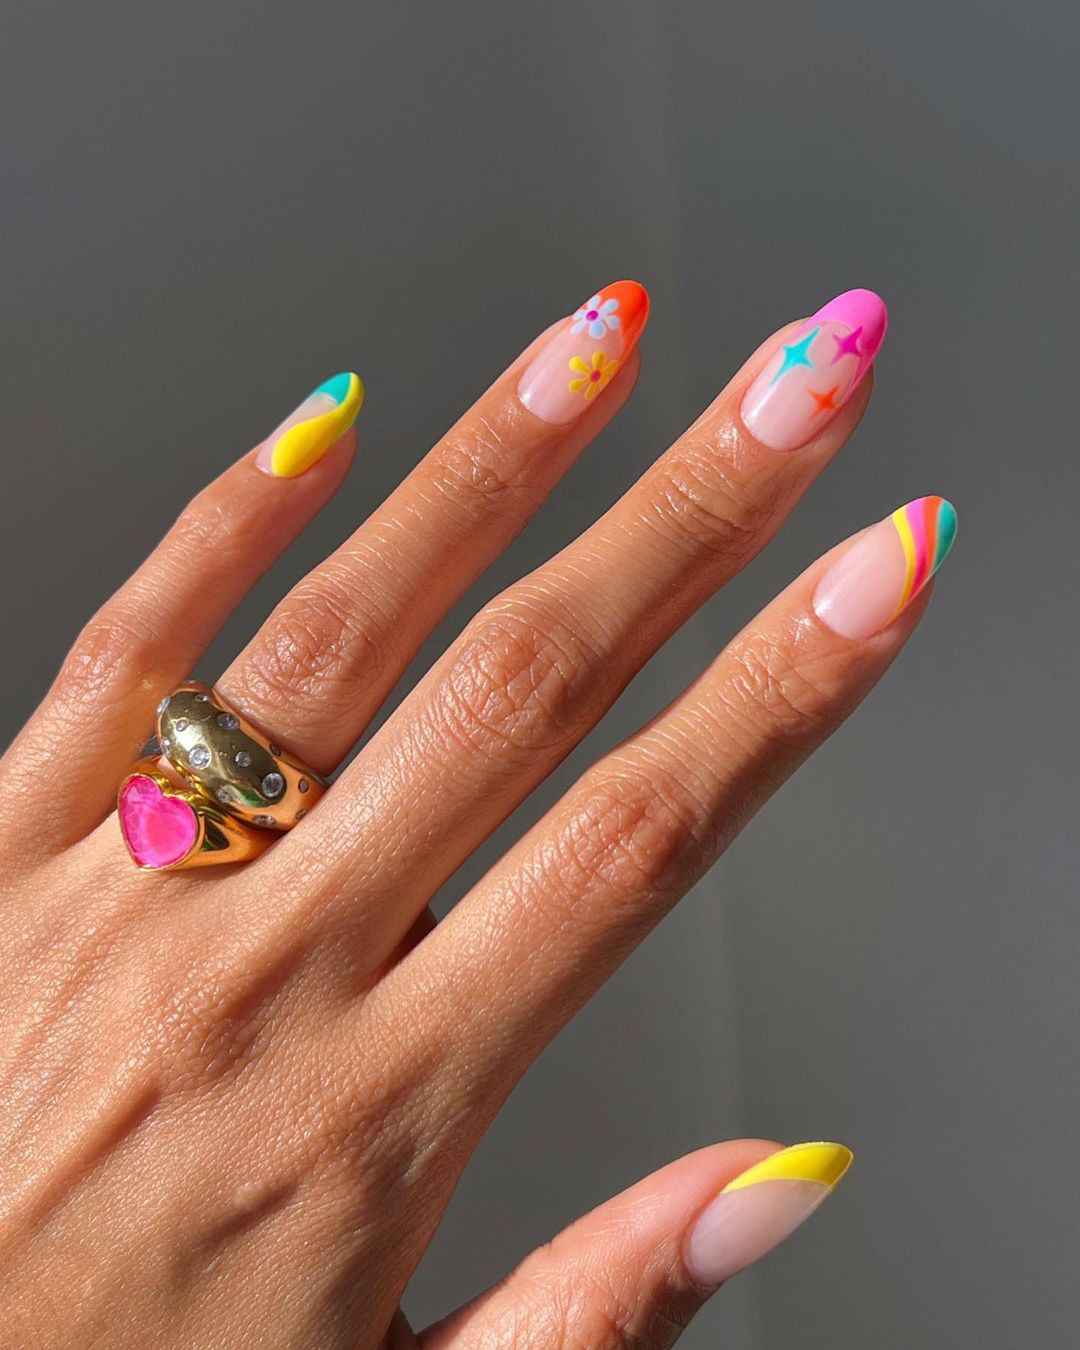 Разноцветный френч с яркими принтами на овальных ногтях средней длины